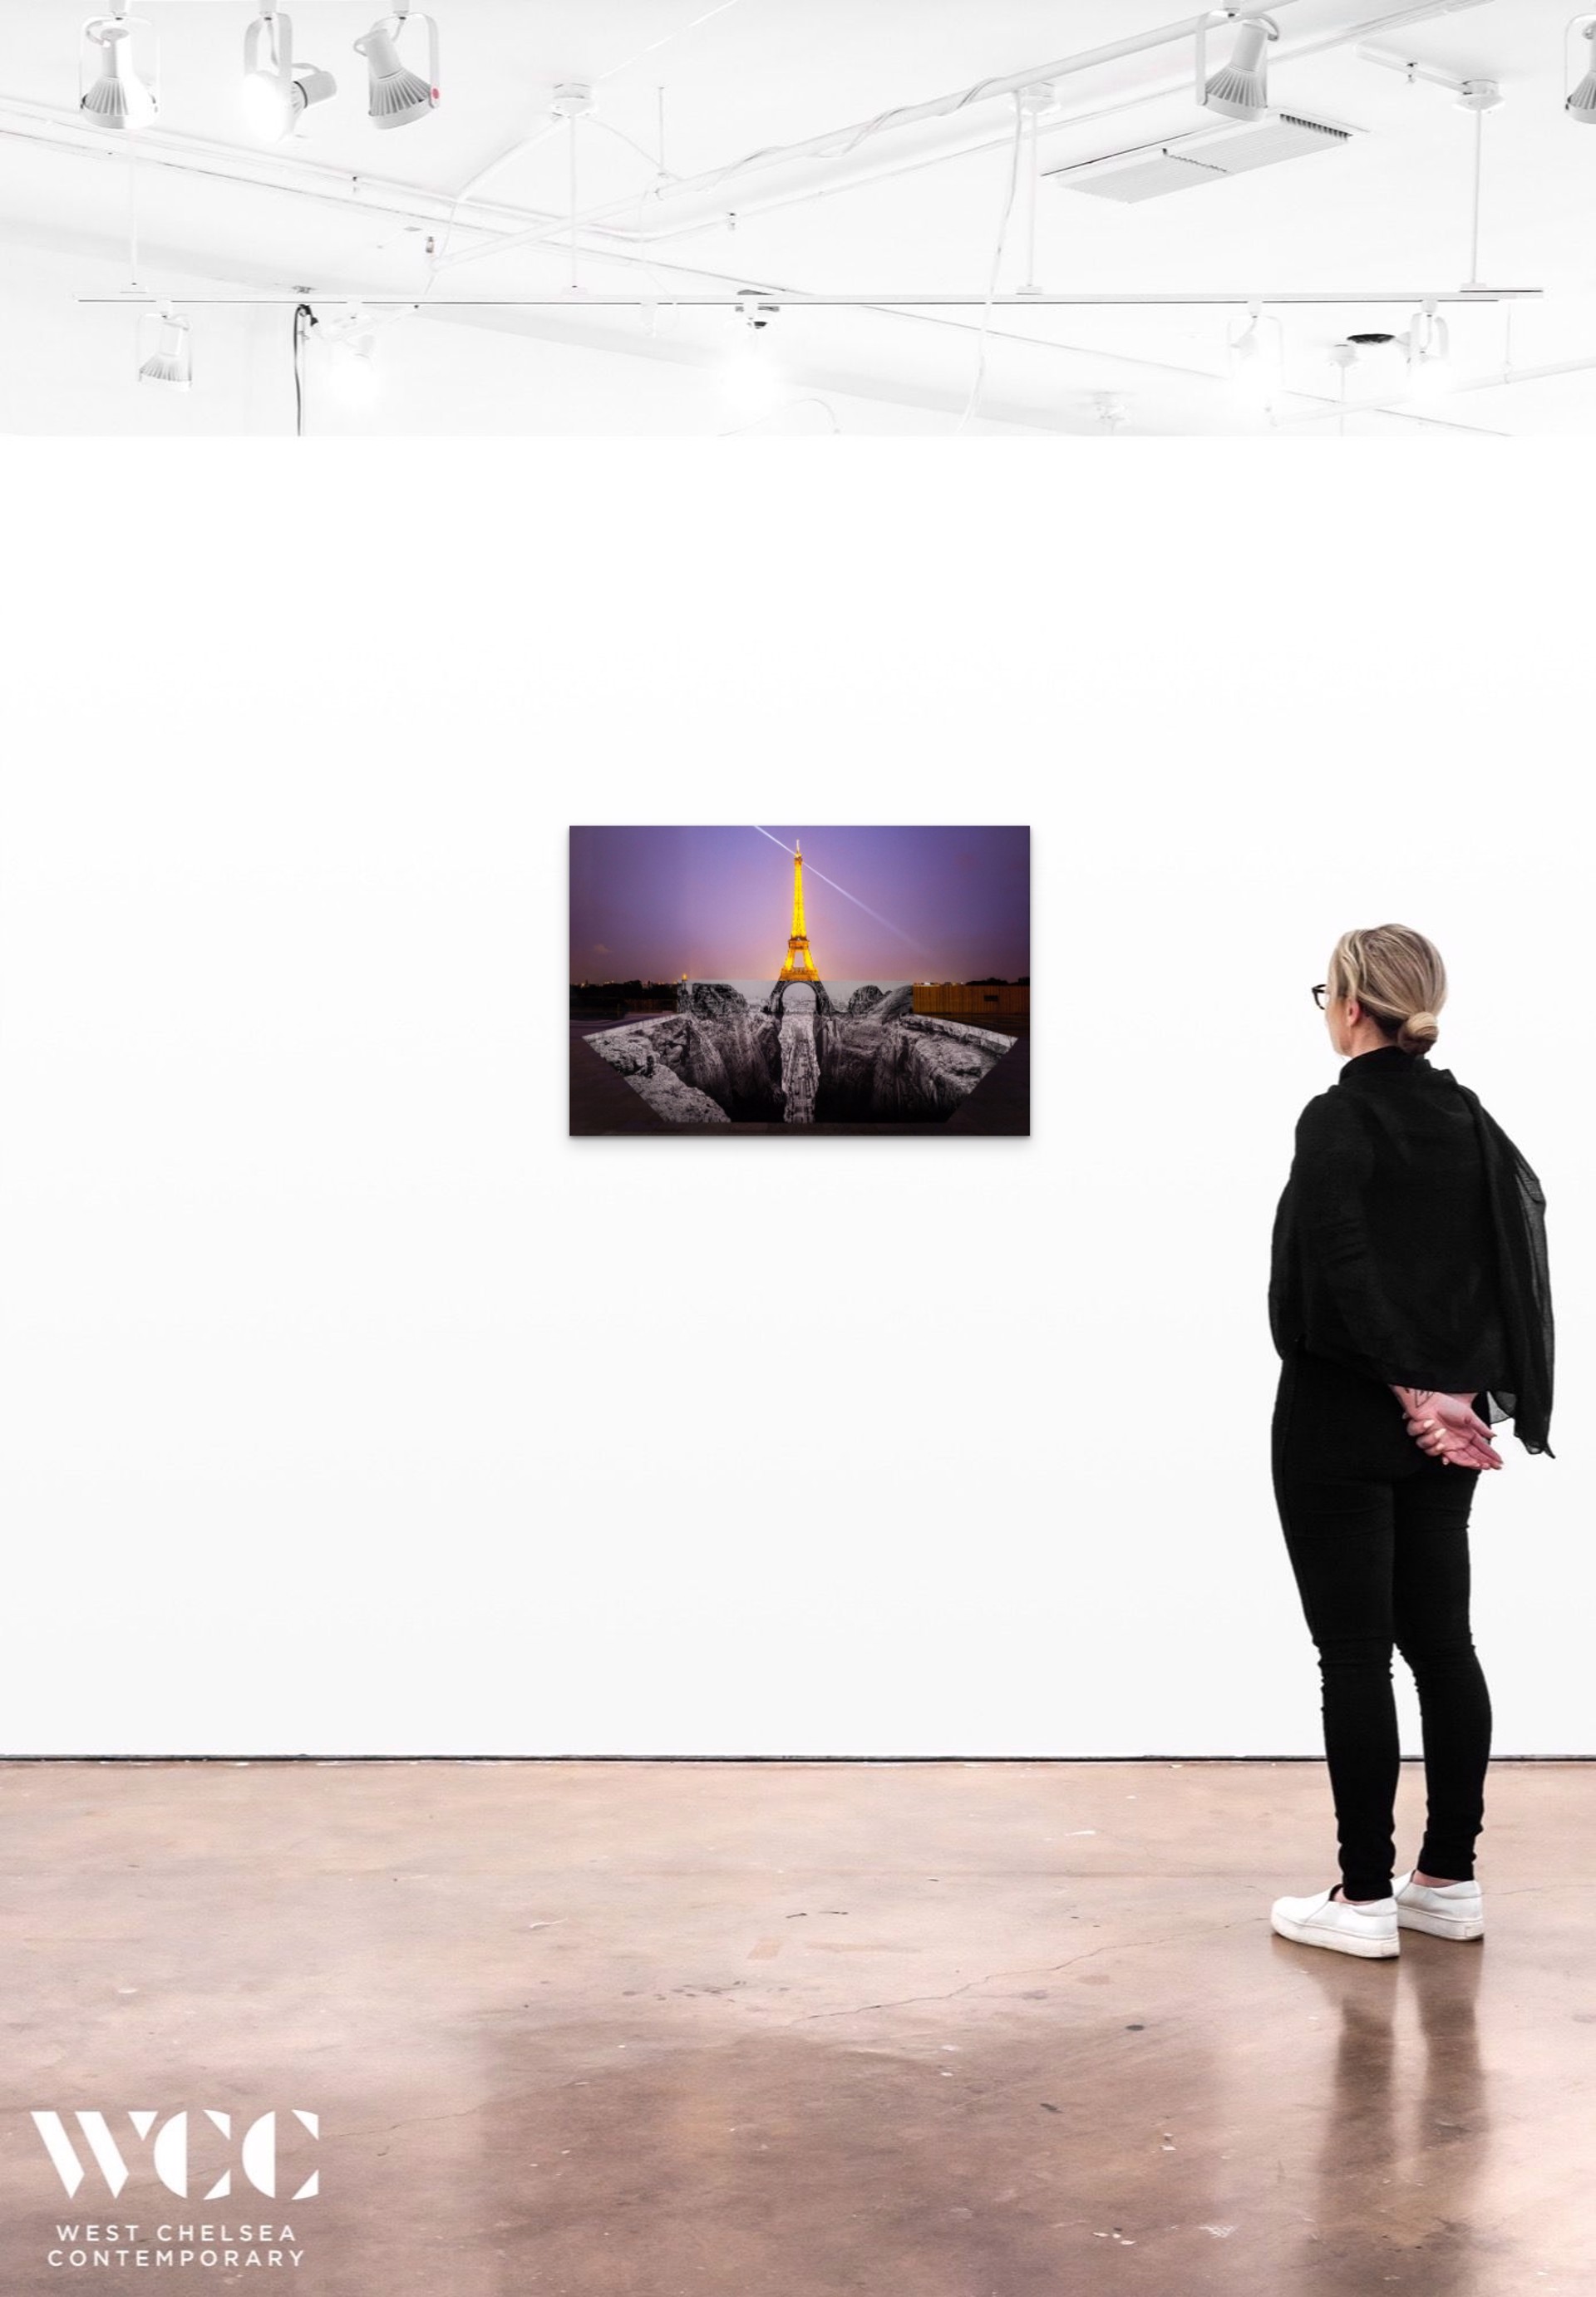 Trompe l'oeil, Les Falaises du Trocadéro , 25 mai 2021, 22h18, Paris, France, 2021 by JR